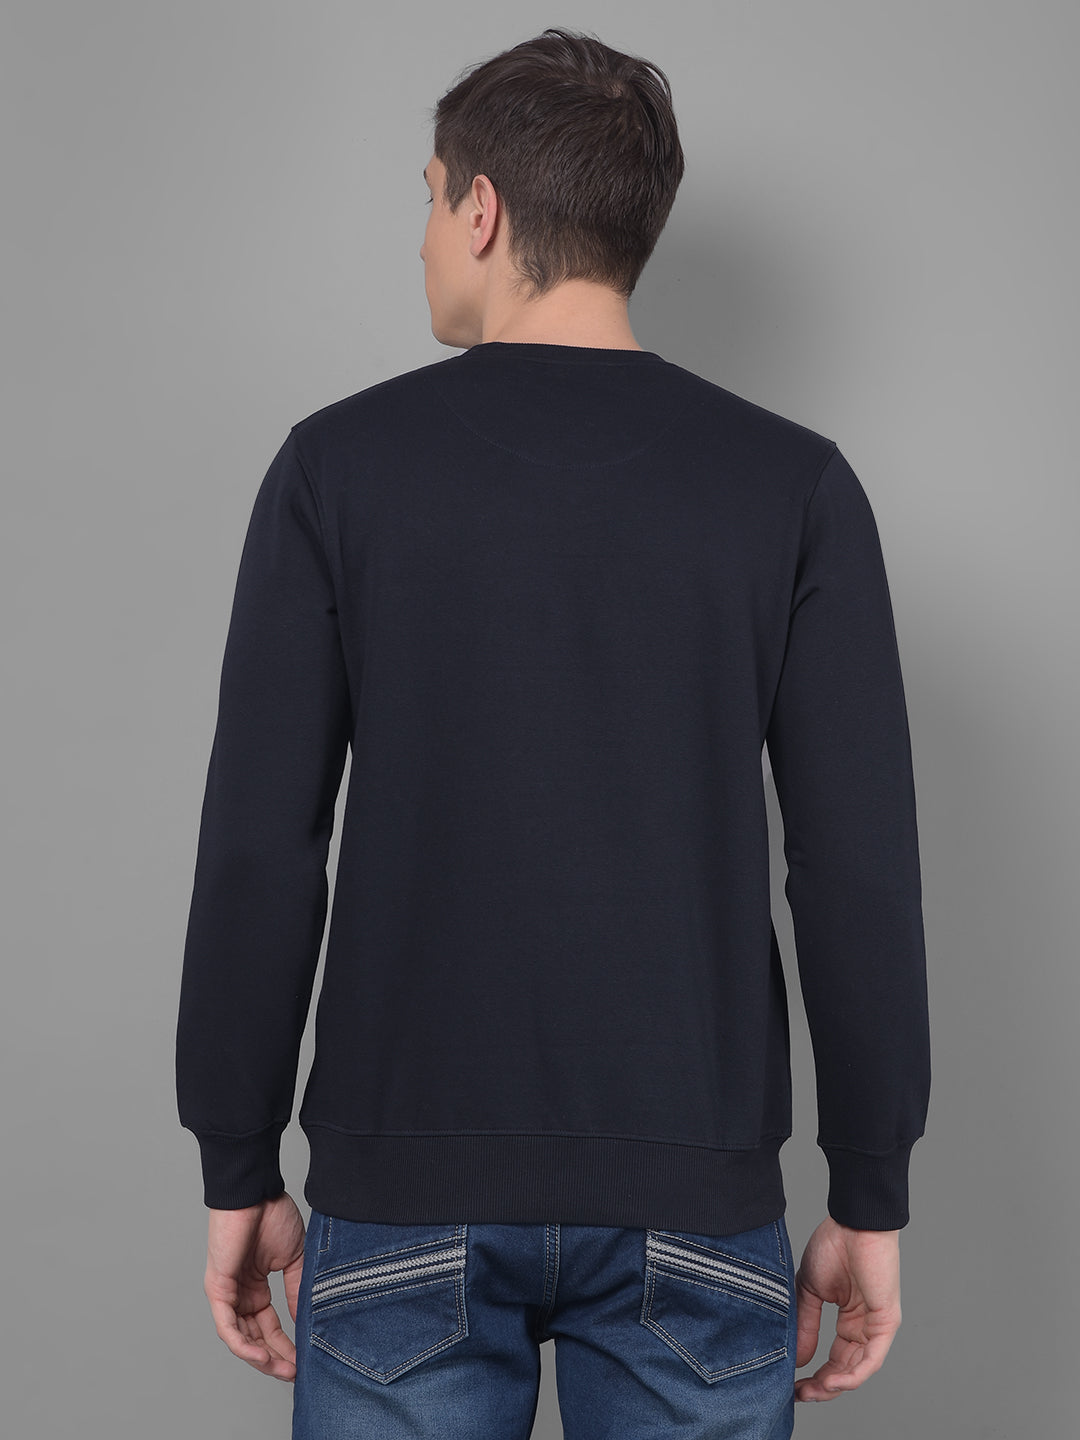 cobb navy blue printed round neck sweatshirt